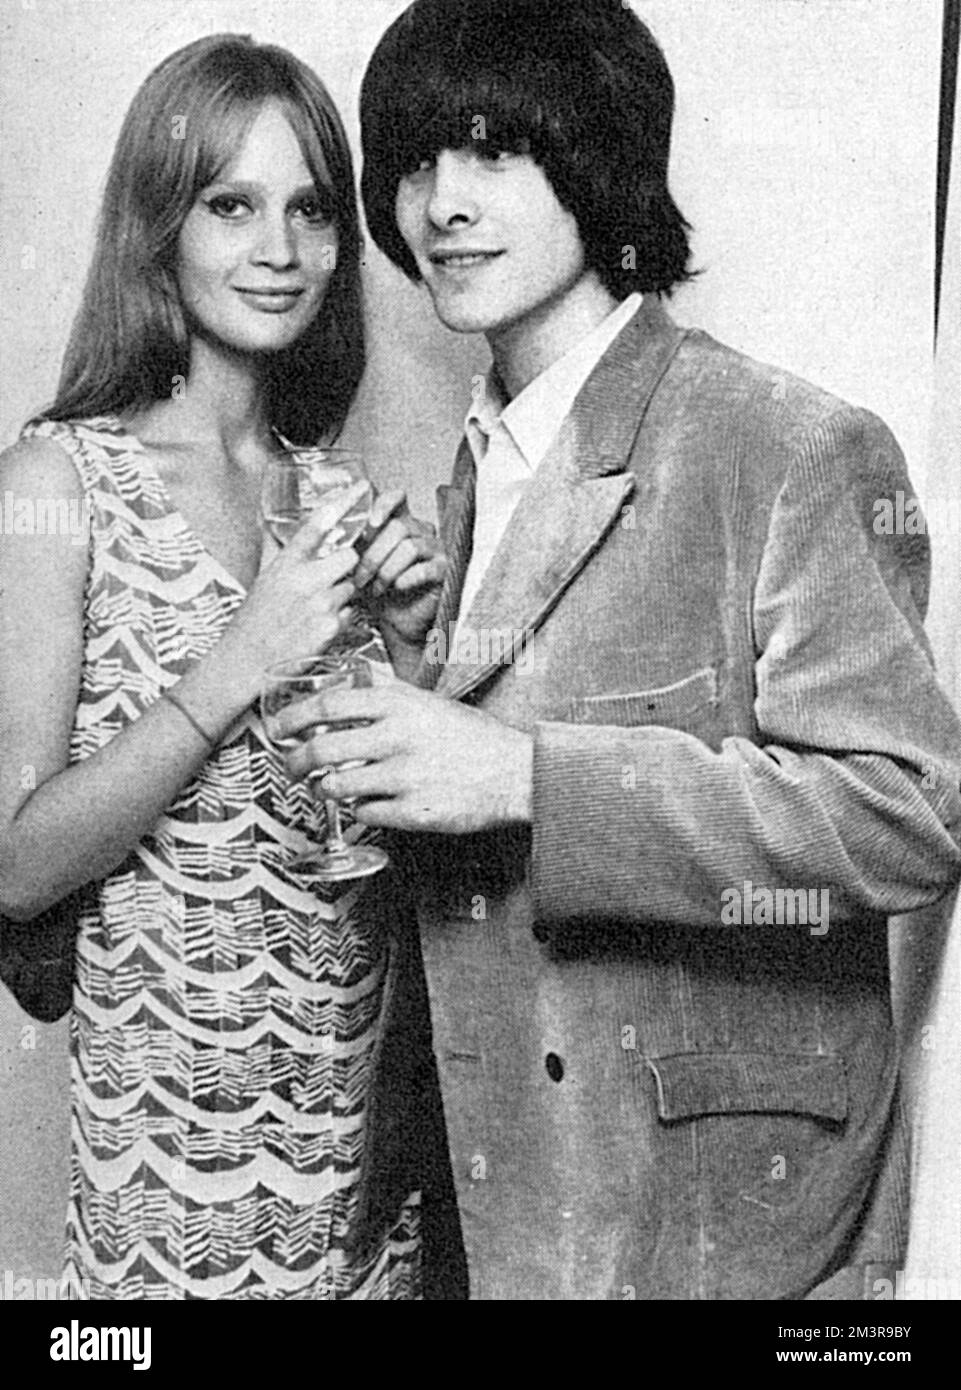 Le modèle de mode à succès de 1960s, Celia Hammond avec Charles Dickens, un photographe qui a apprécié une brève carrière de chanteur de pop. Date: 1966 Banque D'Images